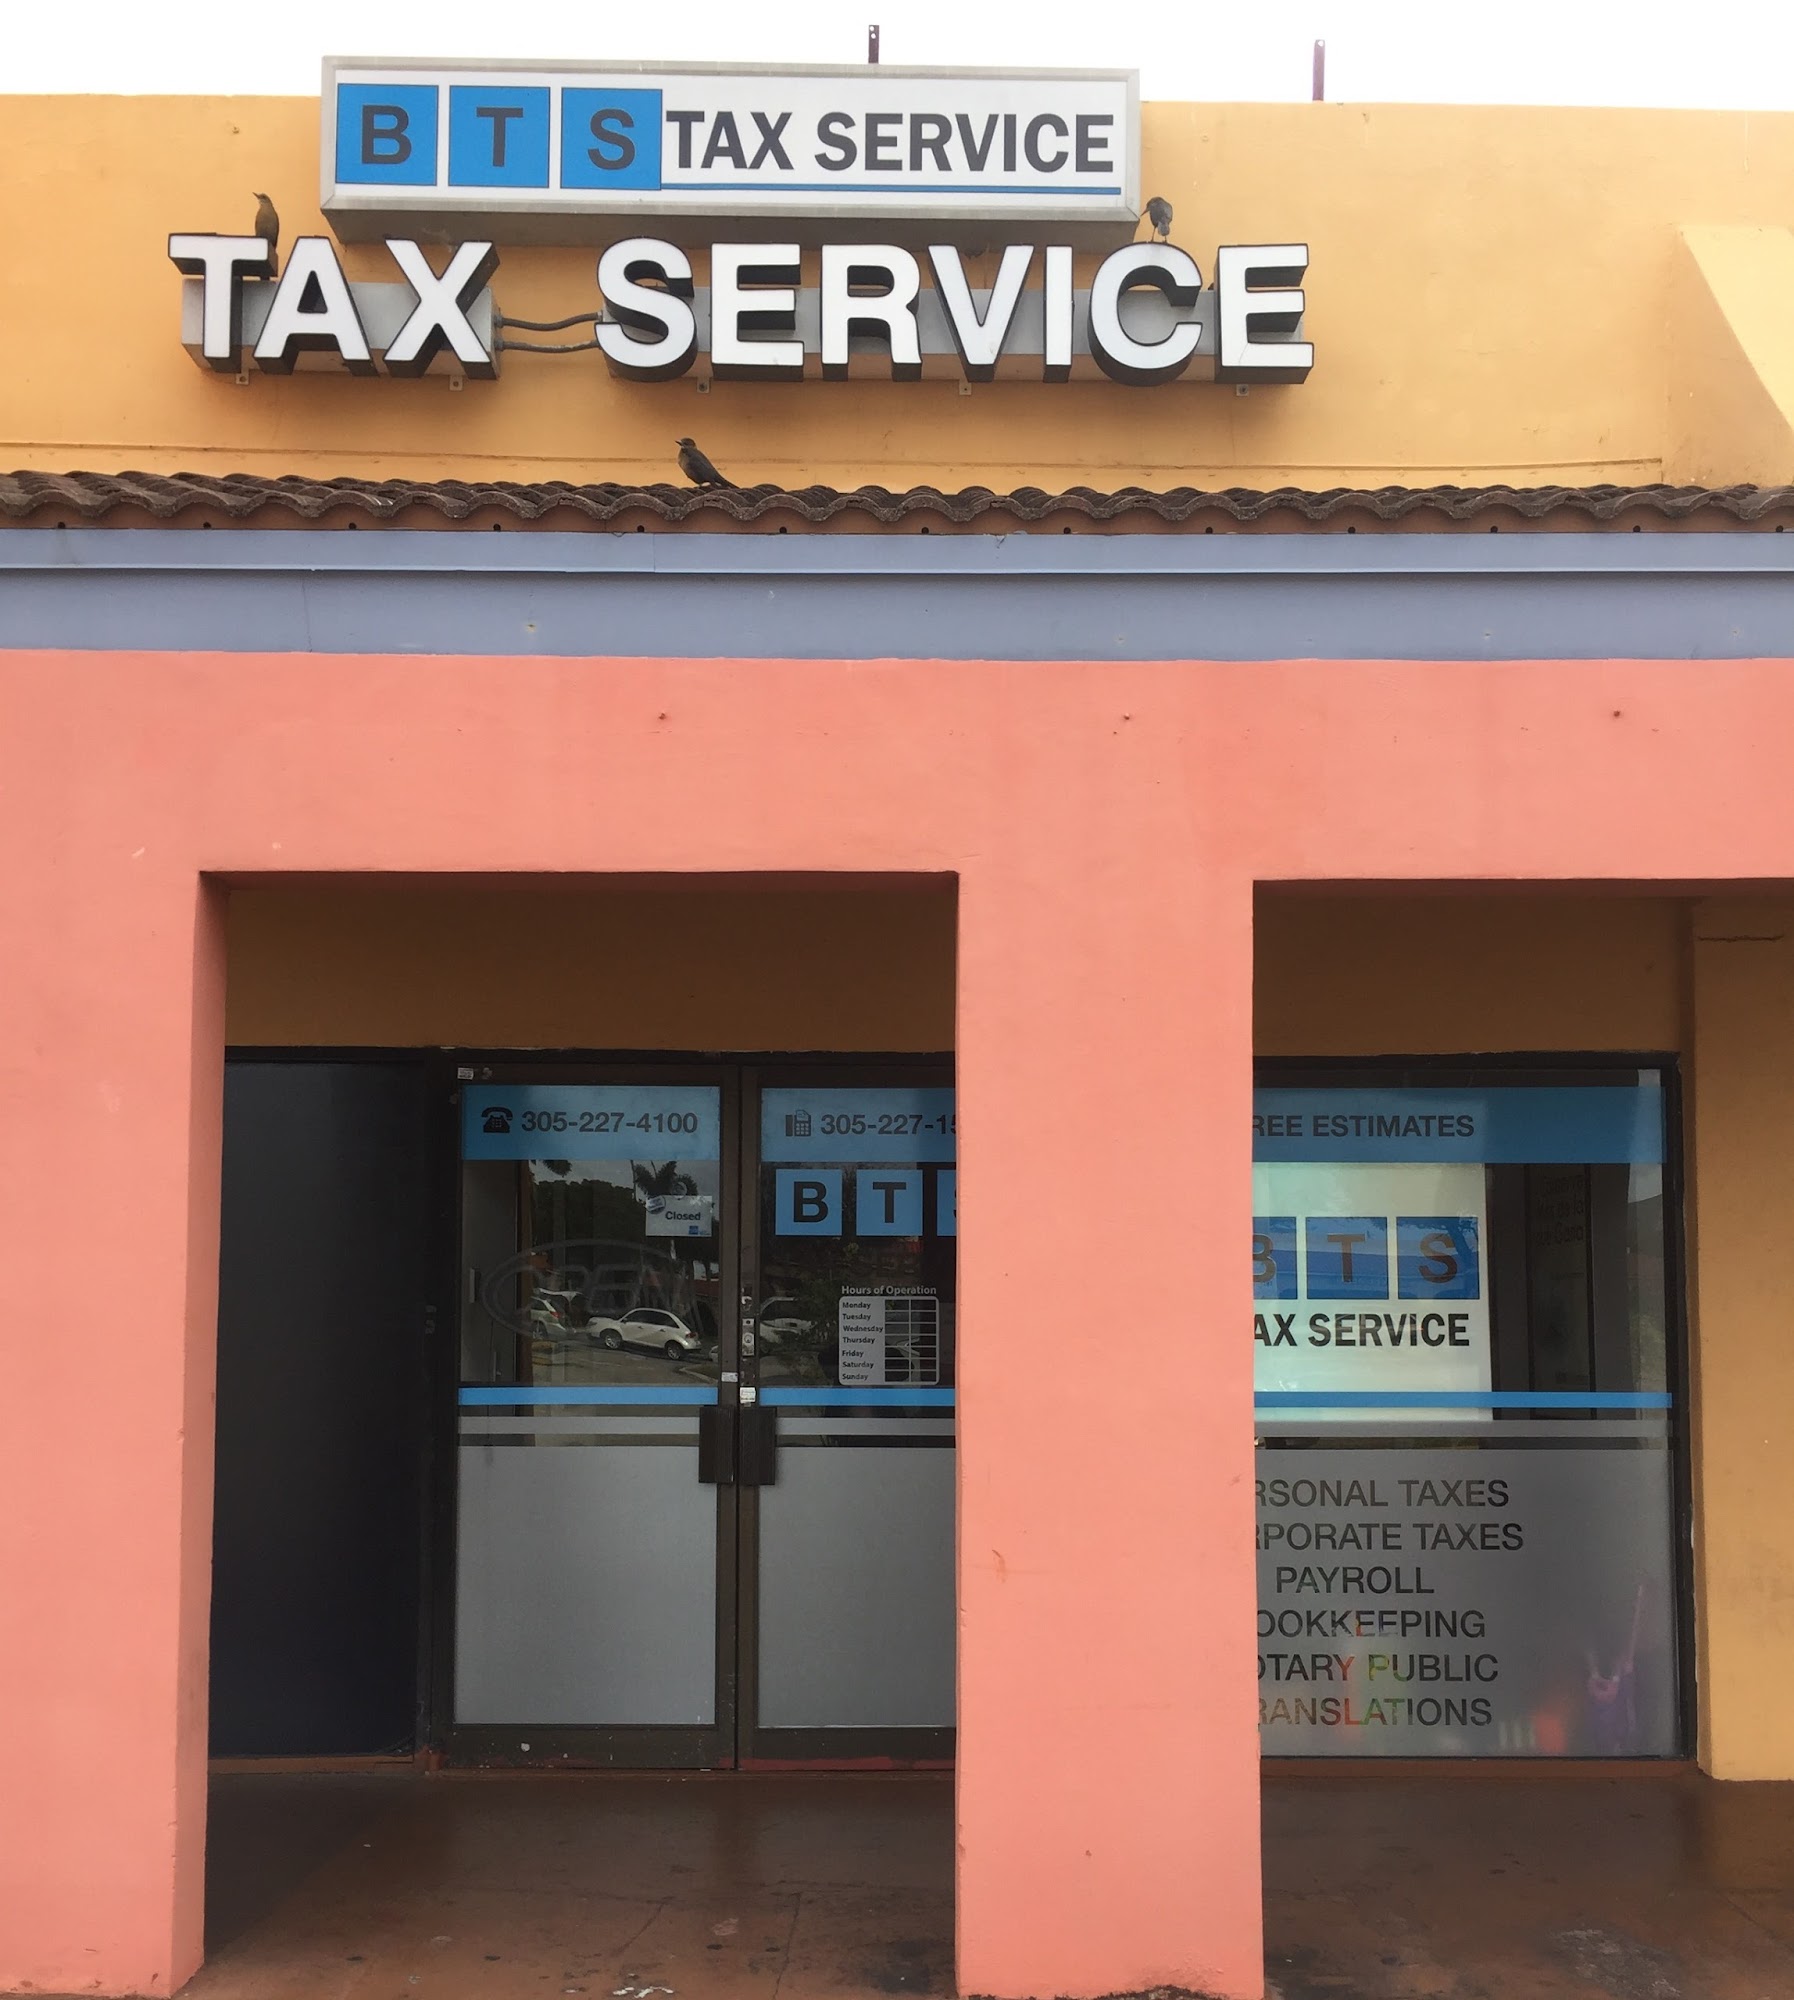 BTS Tax Service